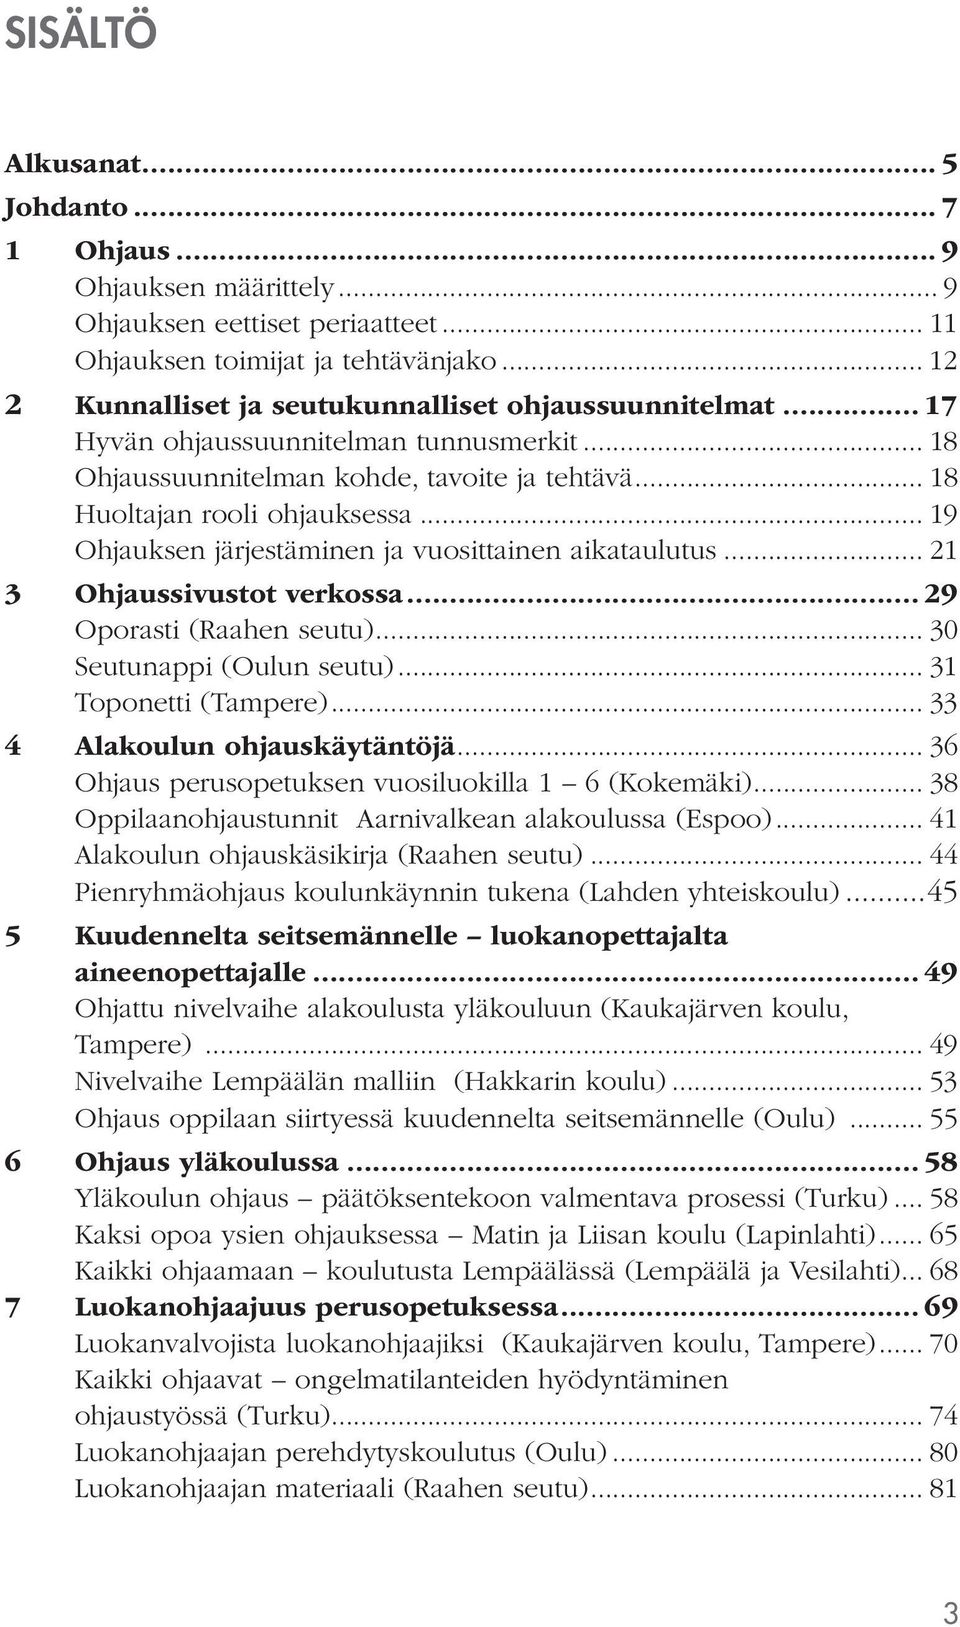 .. 19 Ohjauksen järjestäminen ja vuosittainen aikataulutus... 21 3 Ohjaussivustot verkossa... 29 Oporasti (Raahen seutu)... 30 Seutunappi (Oulun seutu)... 31 Toponetti (Tampere).